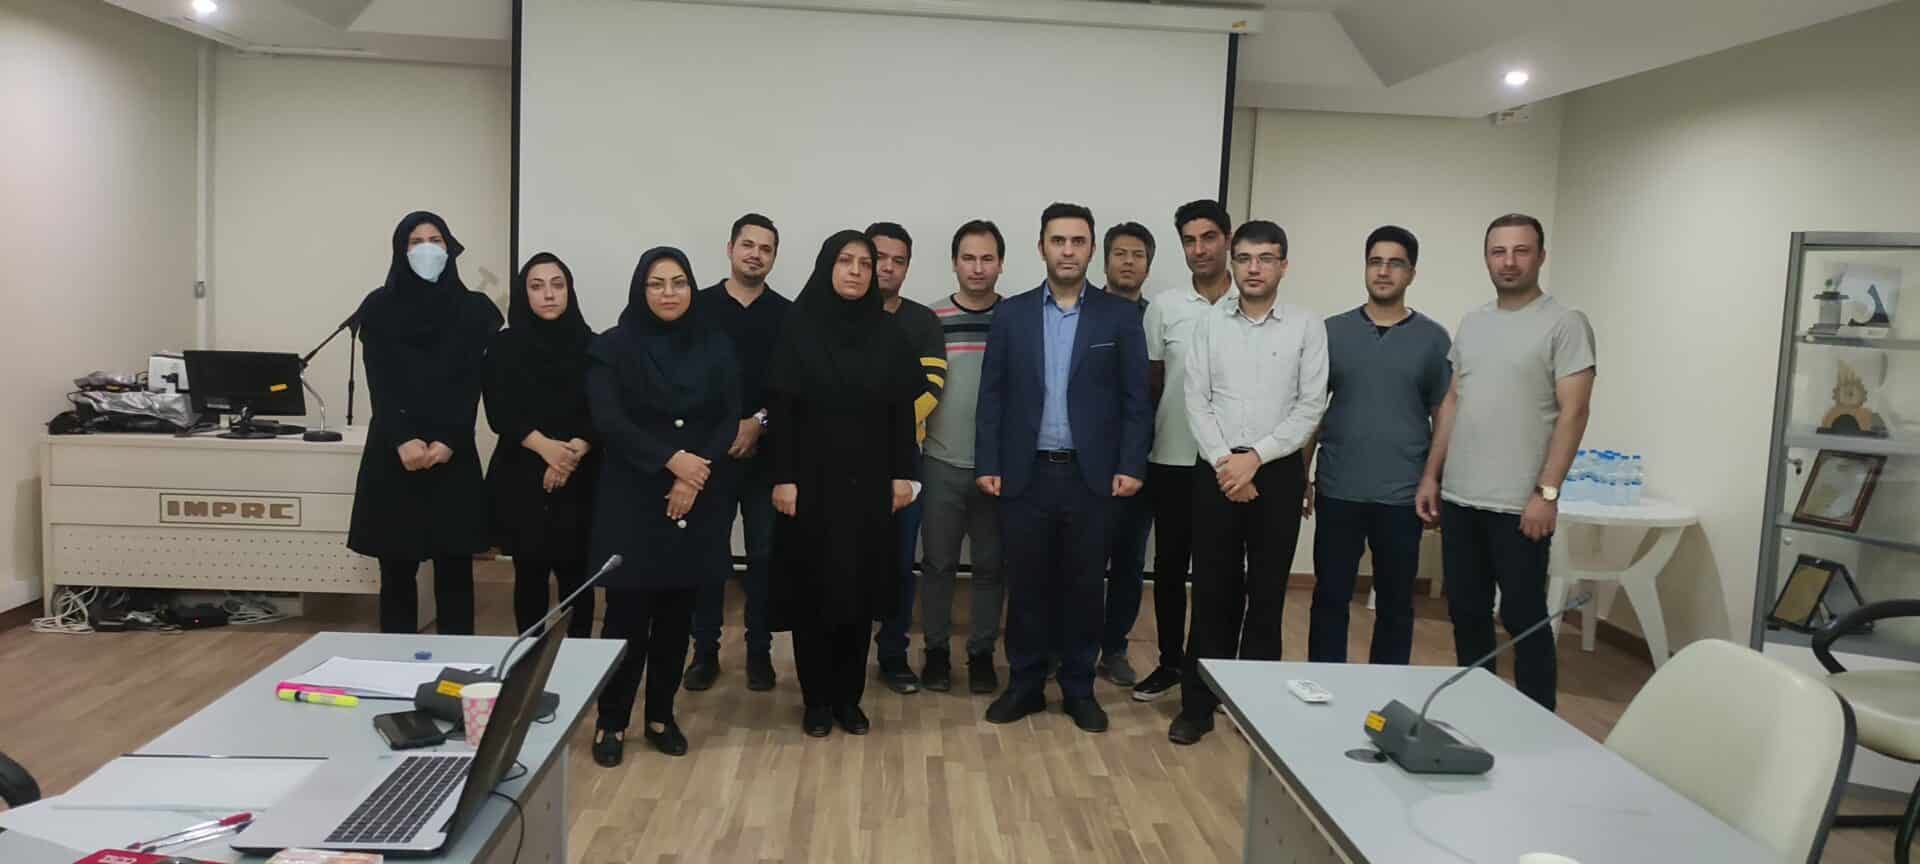 برگزاری دوره آموزشی قواعد تصمیم گیری و مدیریت ریسک در آزمایشگاه در مرکز تحقیقات فرآوری مواد معدنی ایران